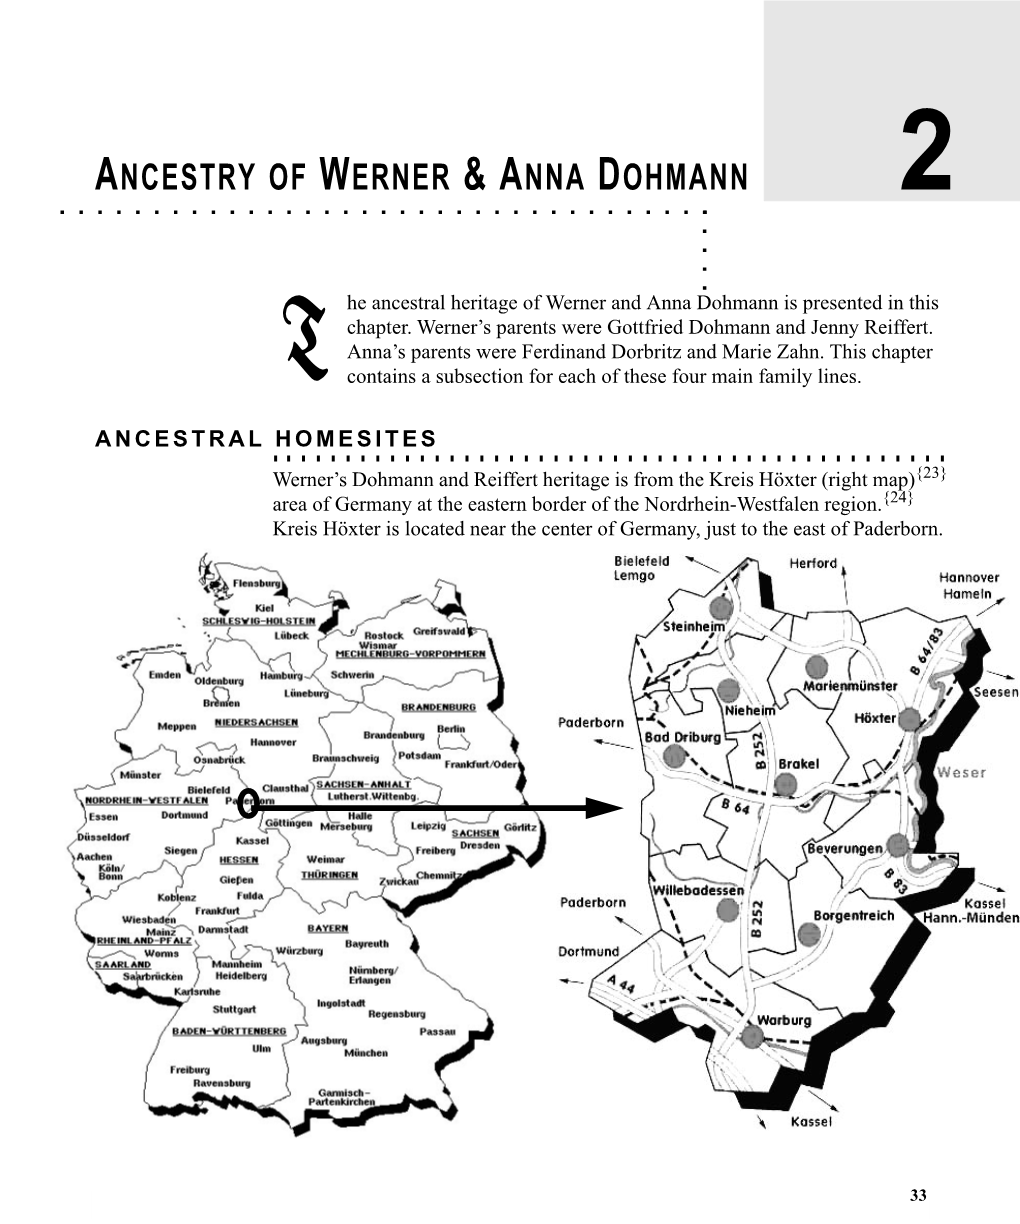 Ancestry of Werner & Anna Dohmann